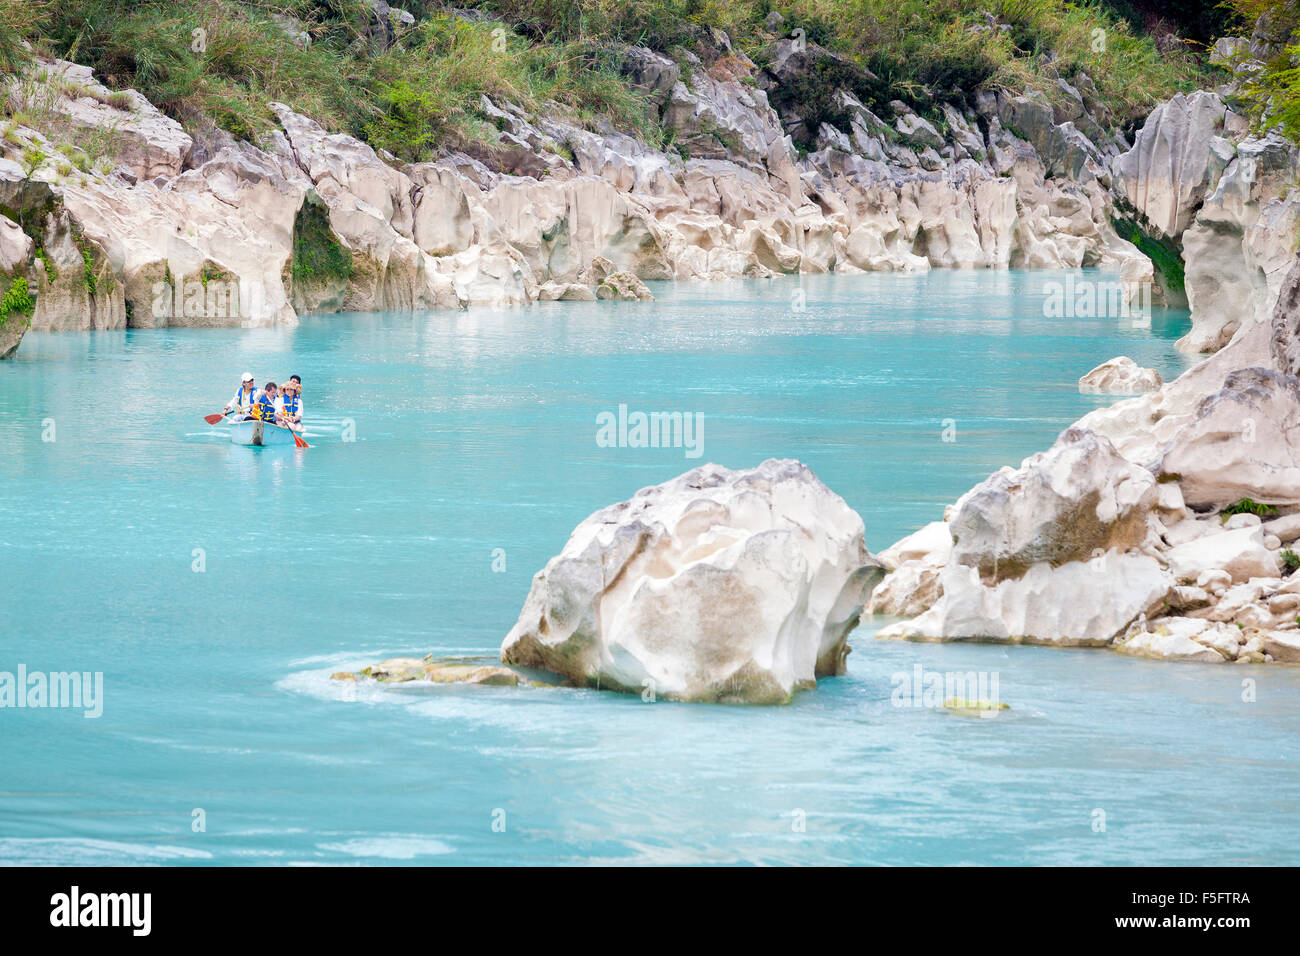 Les touristes reviennent d'observer les chutes d'eau de Tamul sur l'azur Tampaon dans la région de Huasteca Potosina à San Luis Potosi, Mexique. Banque D'Images